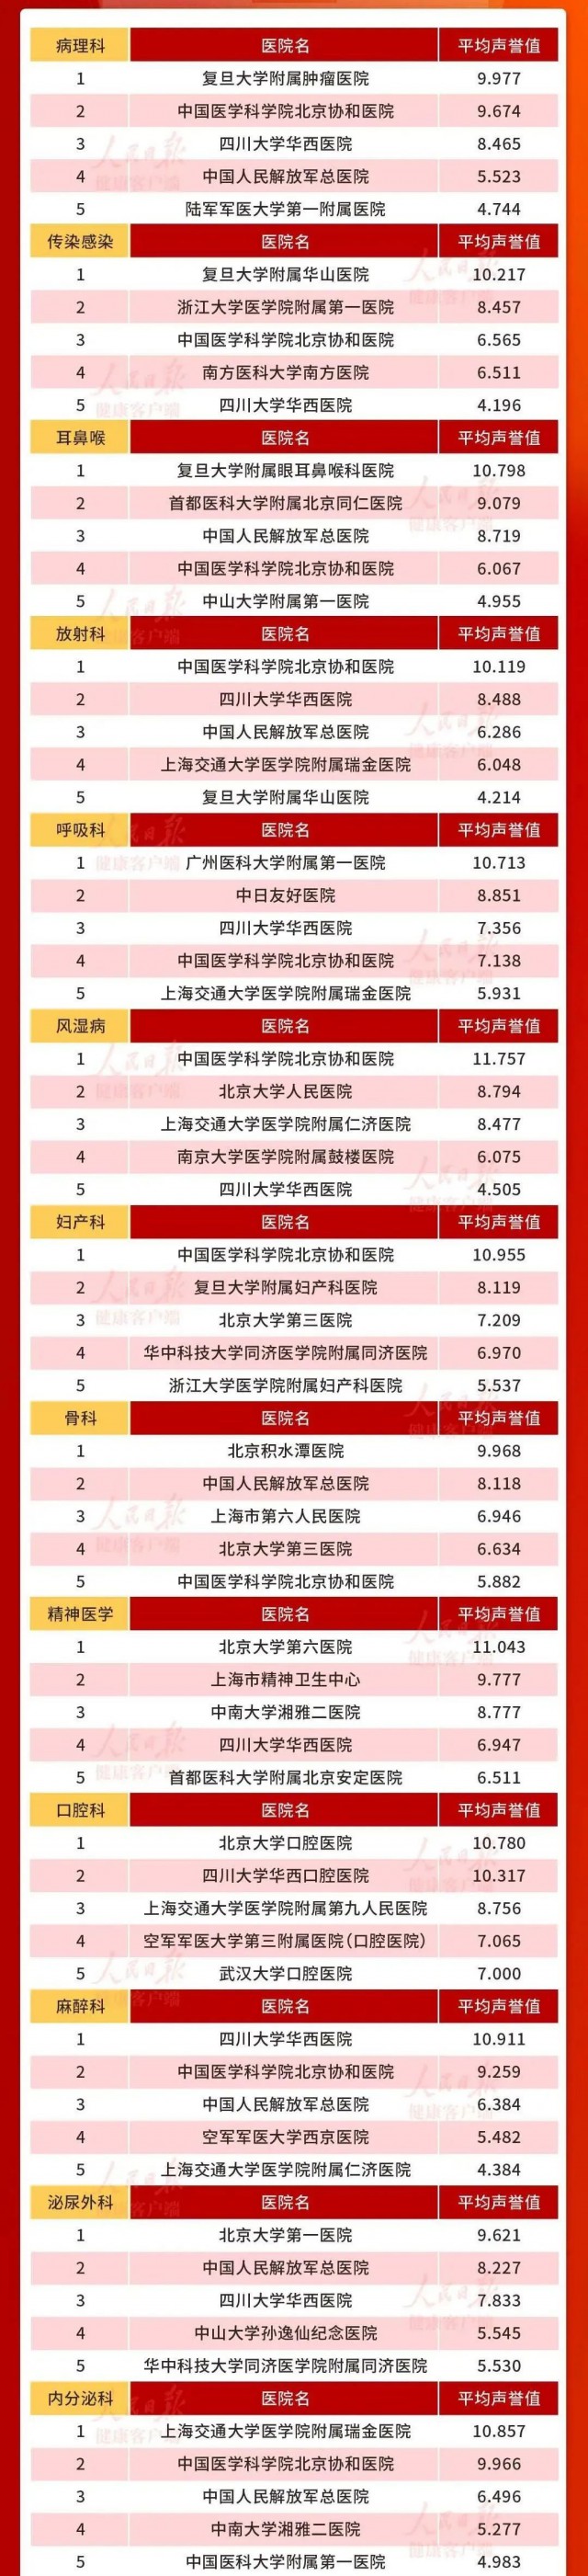 苏州医院护士工资排行_2021年三大主税收入65强排名情况,广州第四、苏州第五、杭州第六